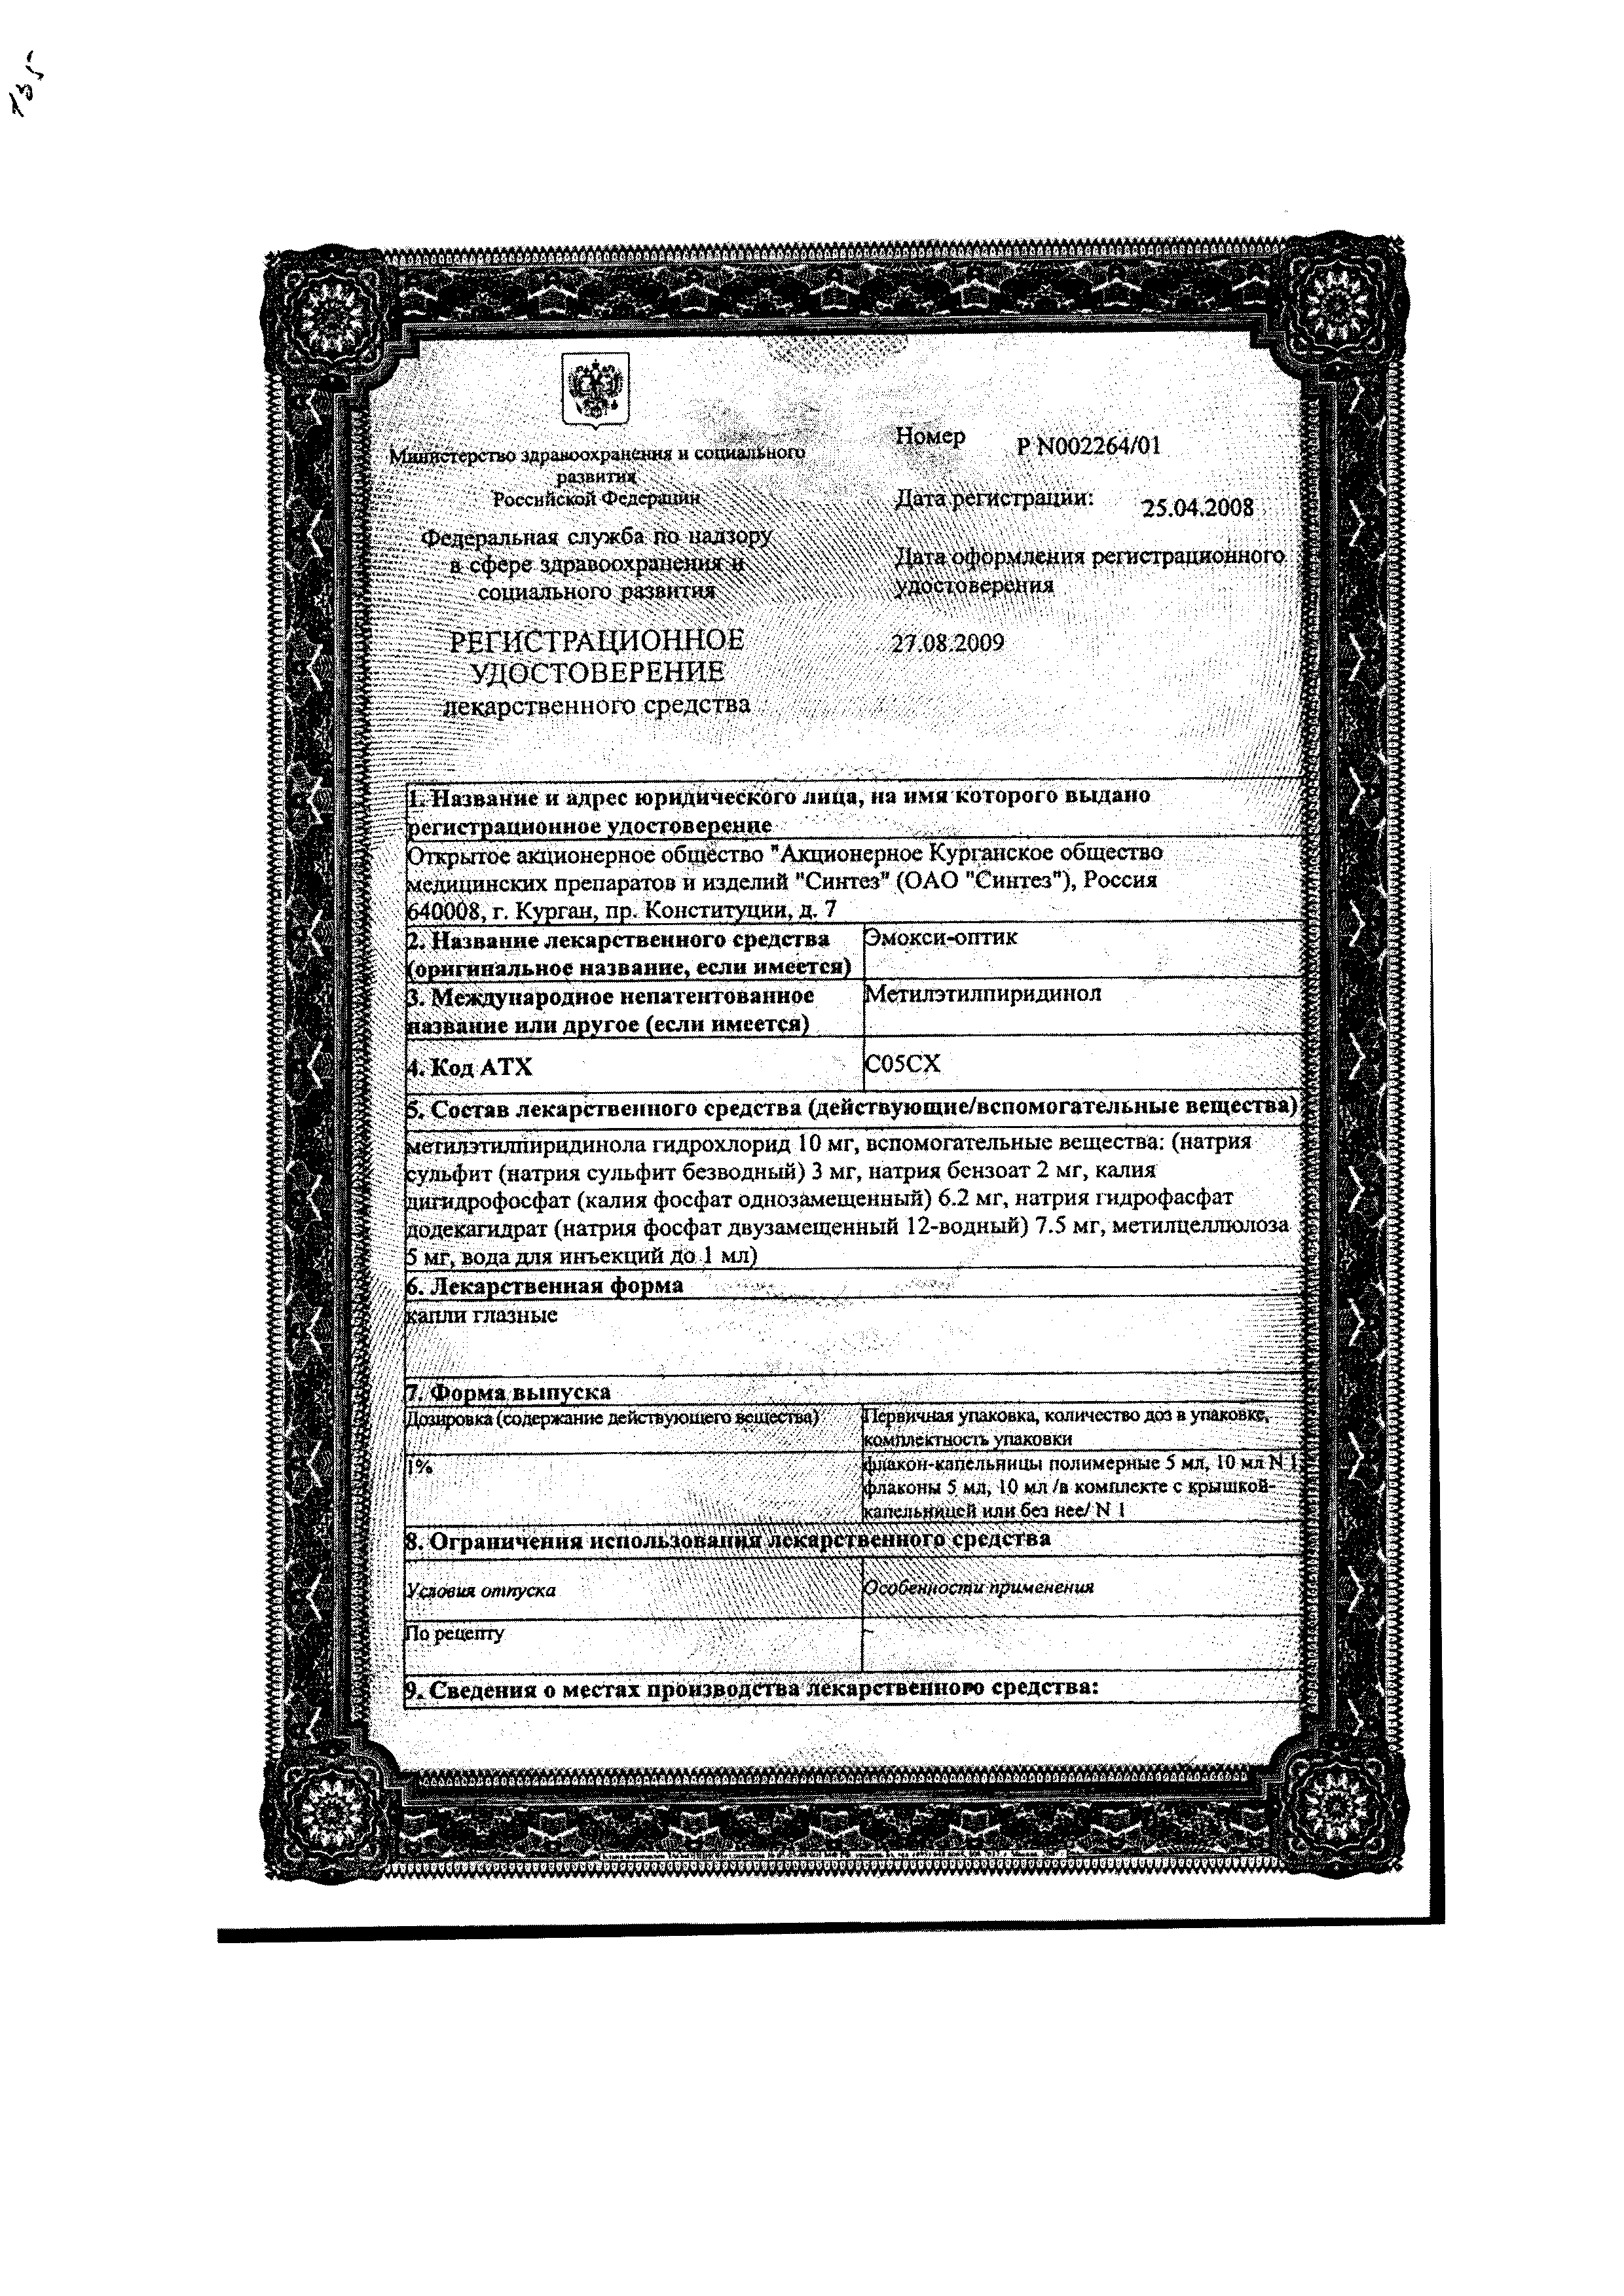 Эмокси-оптик сертификат